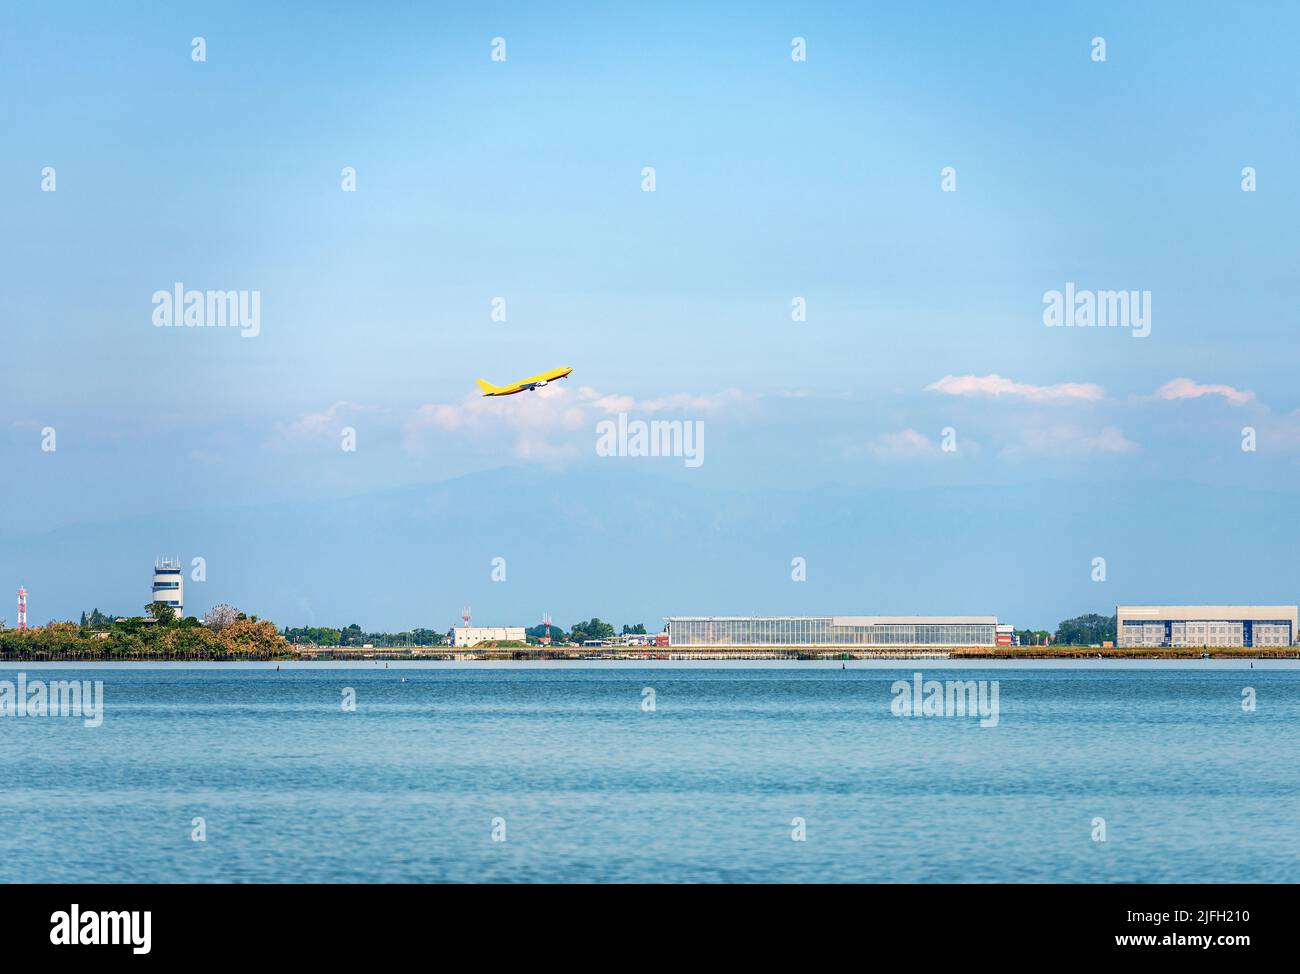 Venezia, aeroporto internazionale chiamato Marco Polo, noto anche come aeroporto Venezia-Tessera con decollo aereo di linea, di fronte alla laguna veneta. Foto Stock